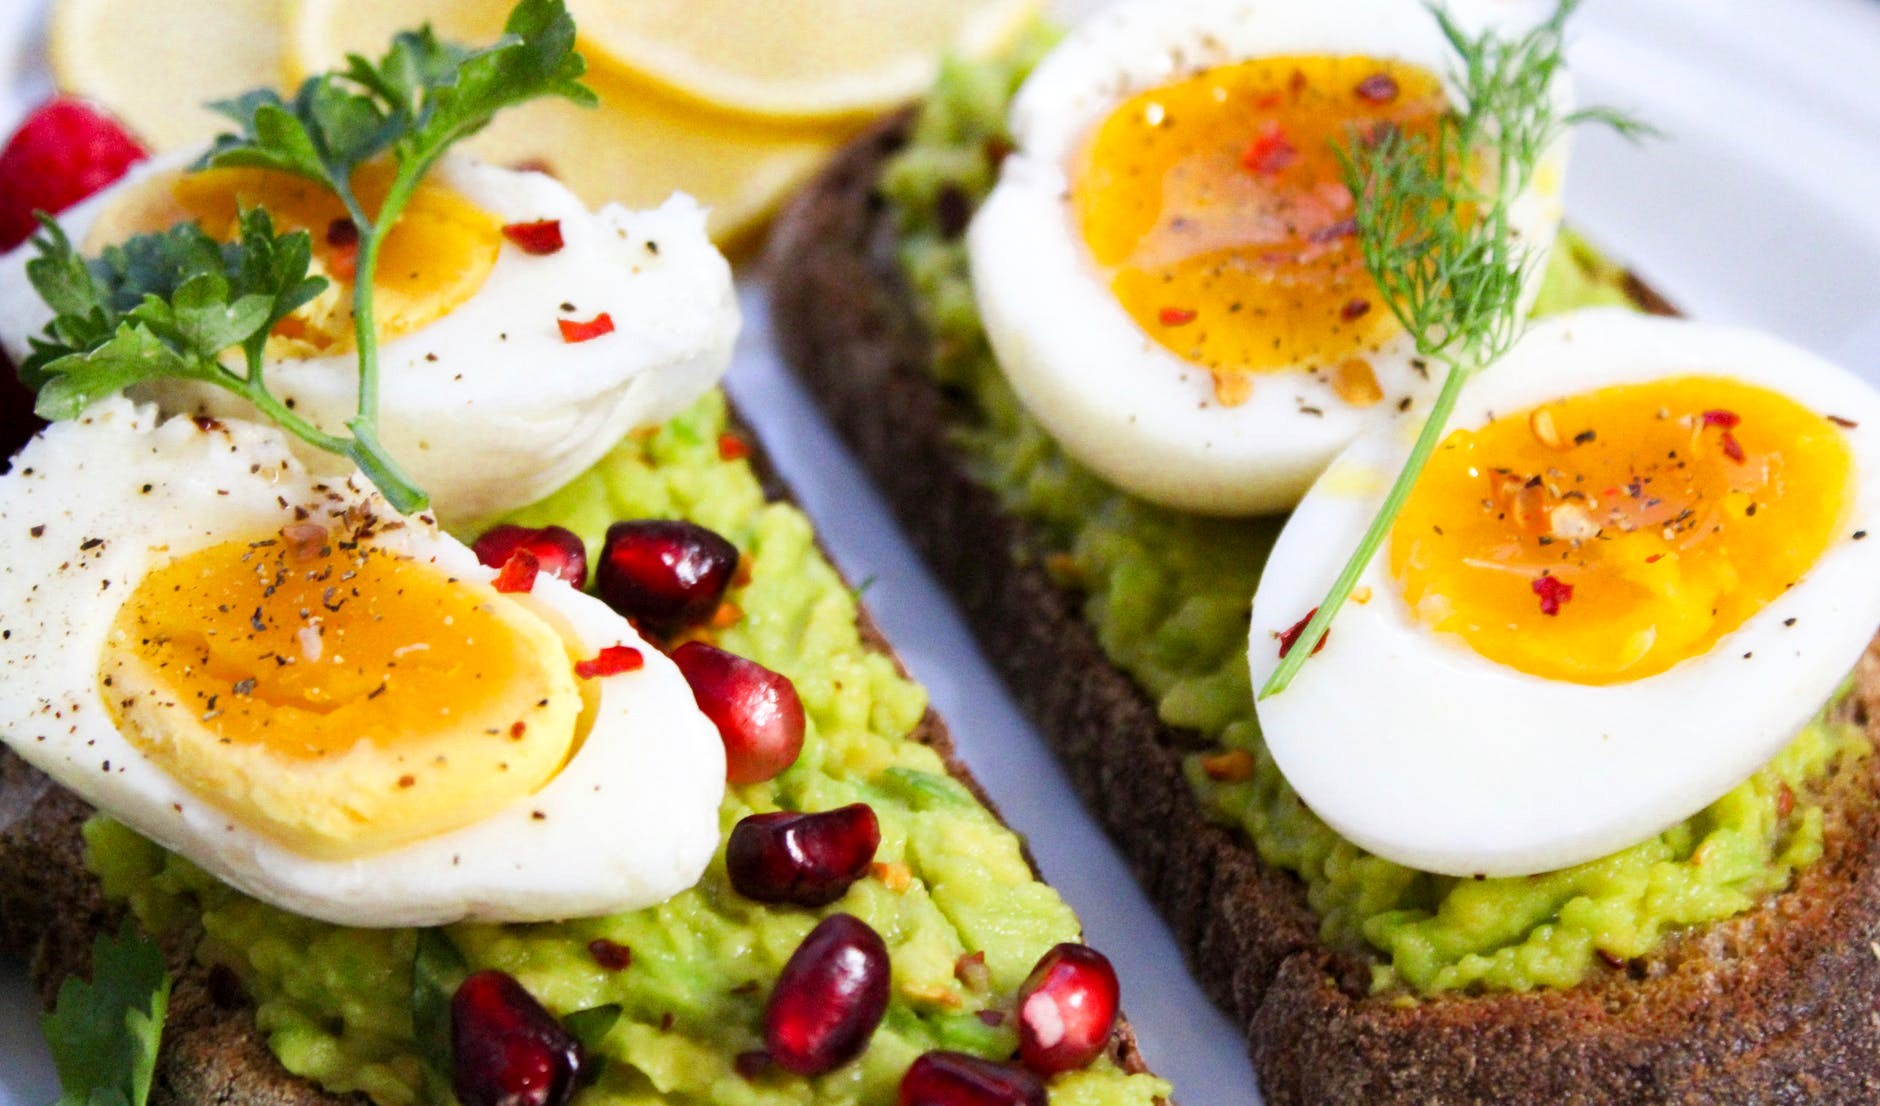 bữa sáng với trứng và bánh mì là “combo” tuyệt vời khởi động một ngày mới năng động và tràn đầy năng lượng